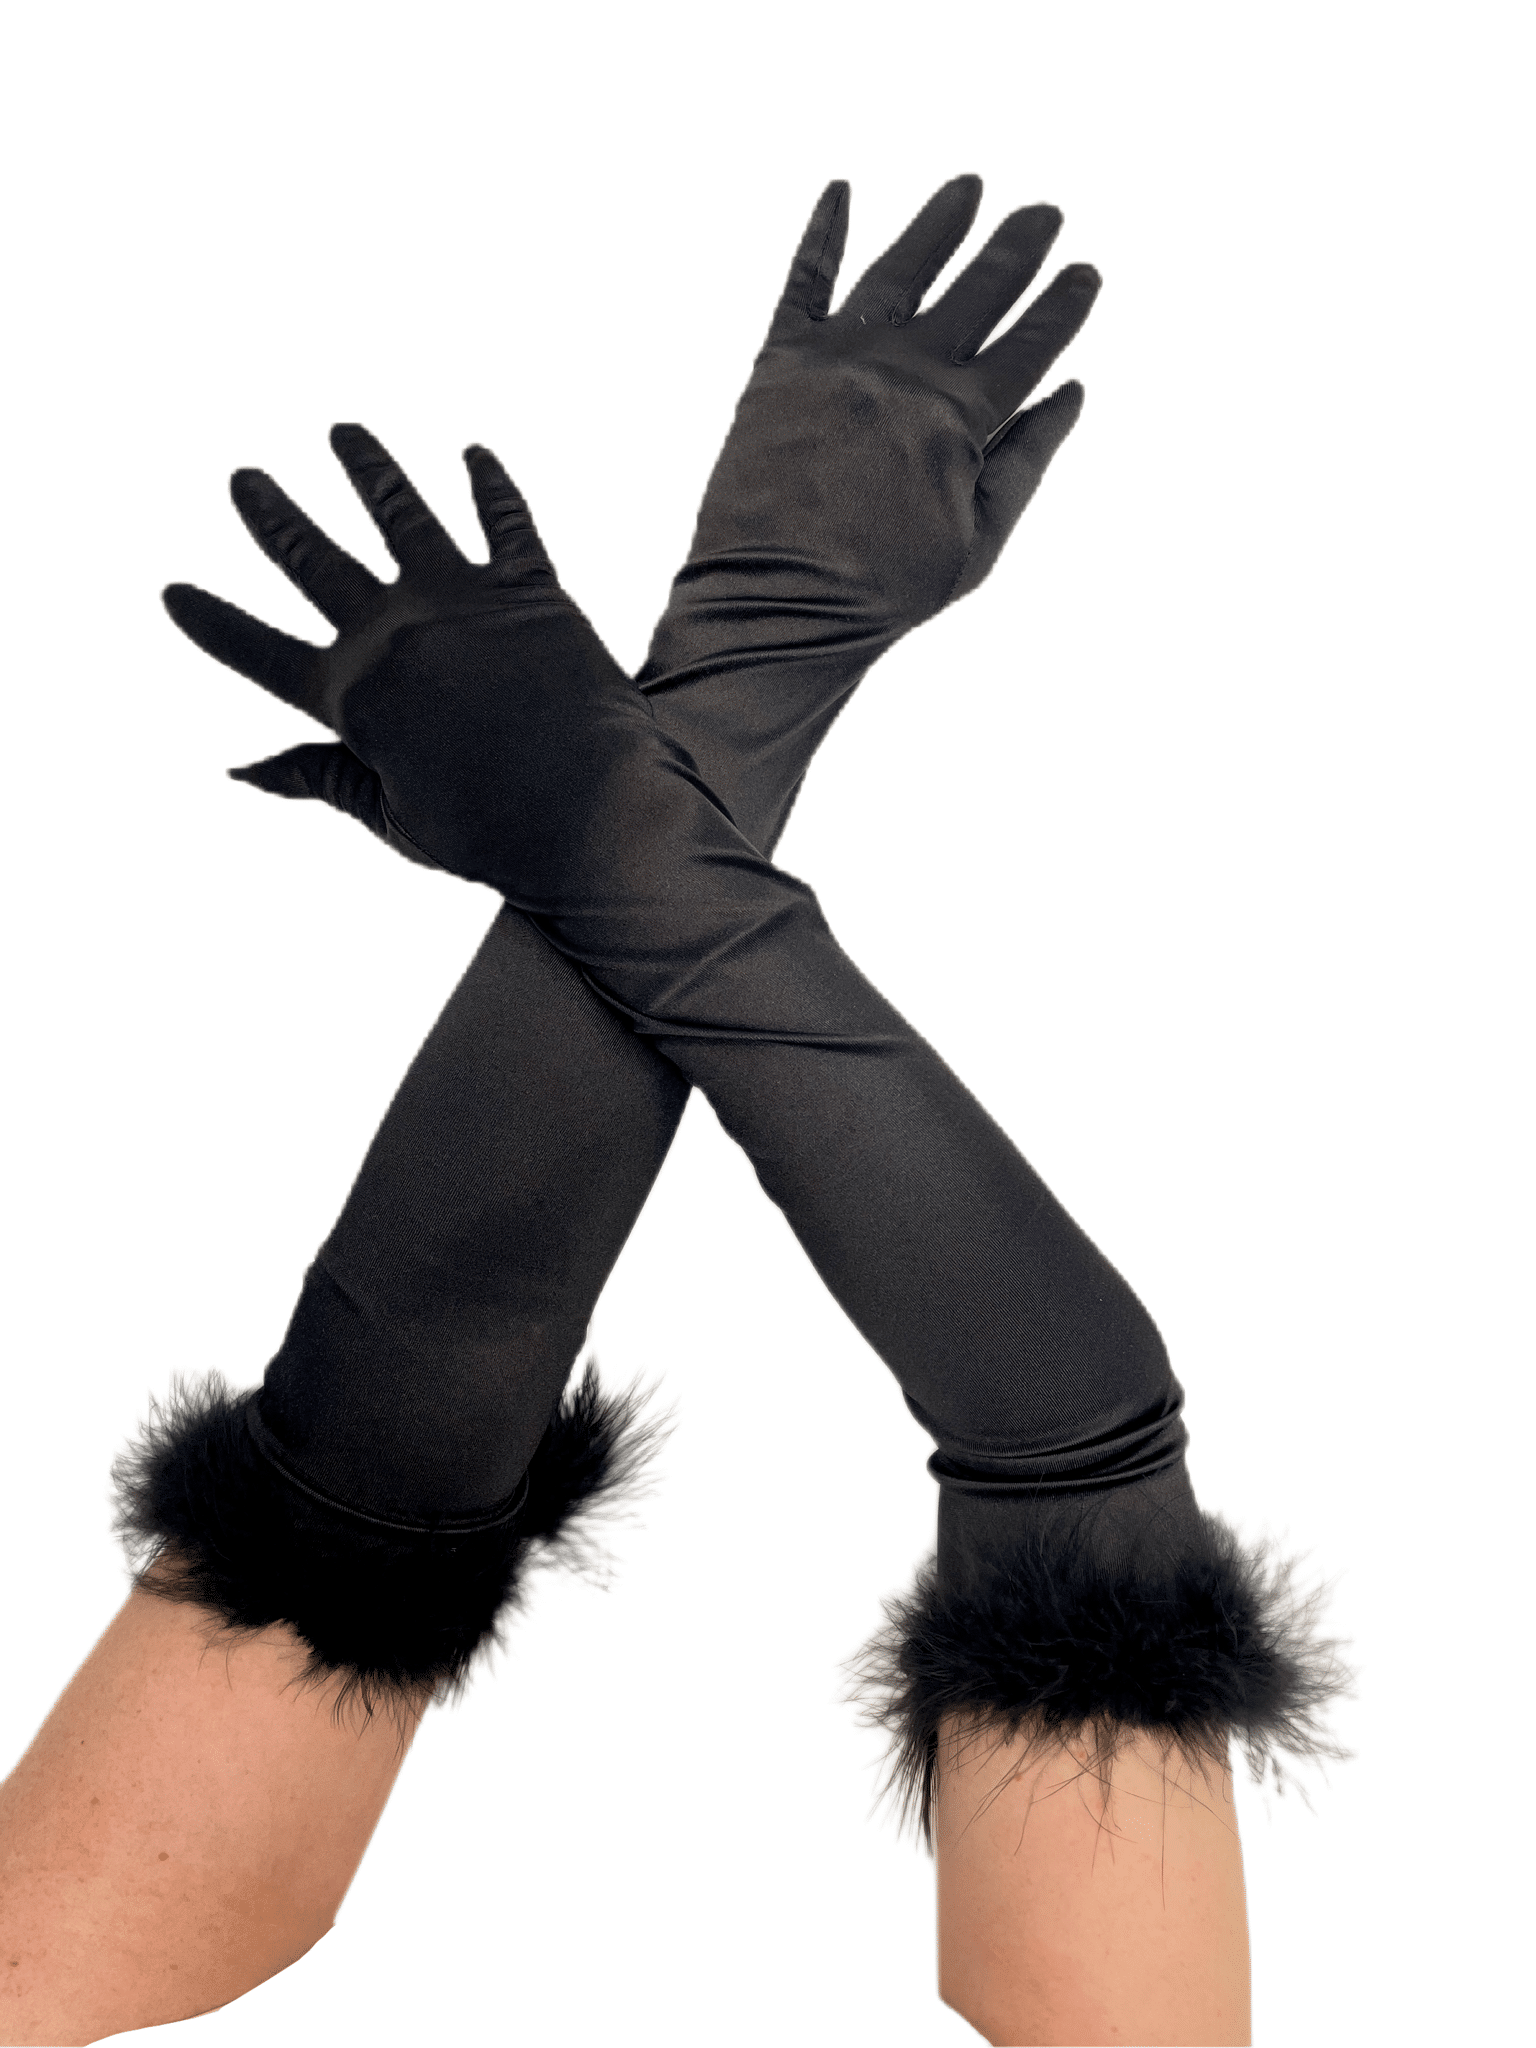 Дълги черни ръкавици с пера на маншетите, добавящи елегантен акцент към официалния ви вид.